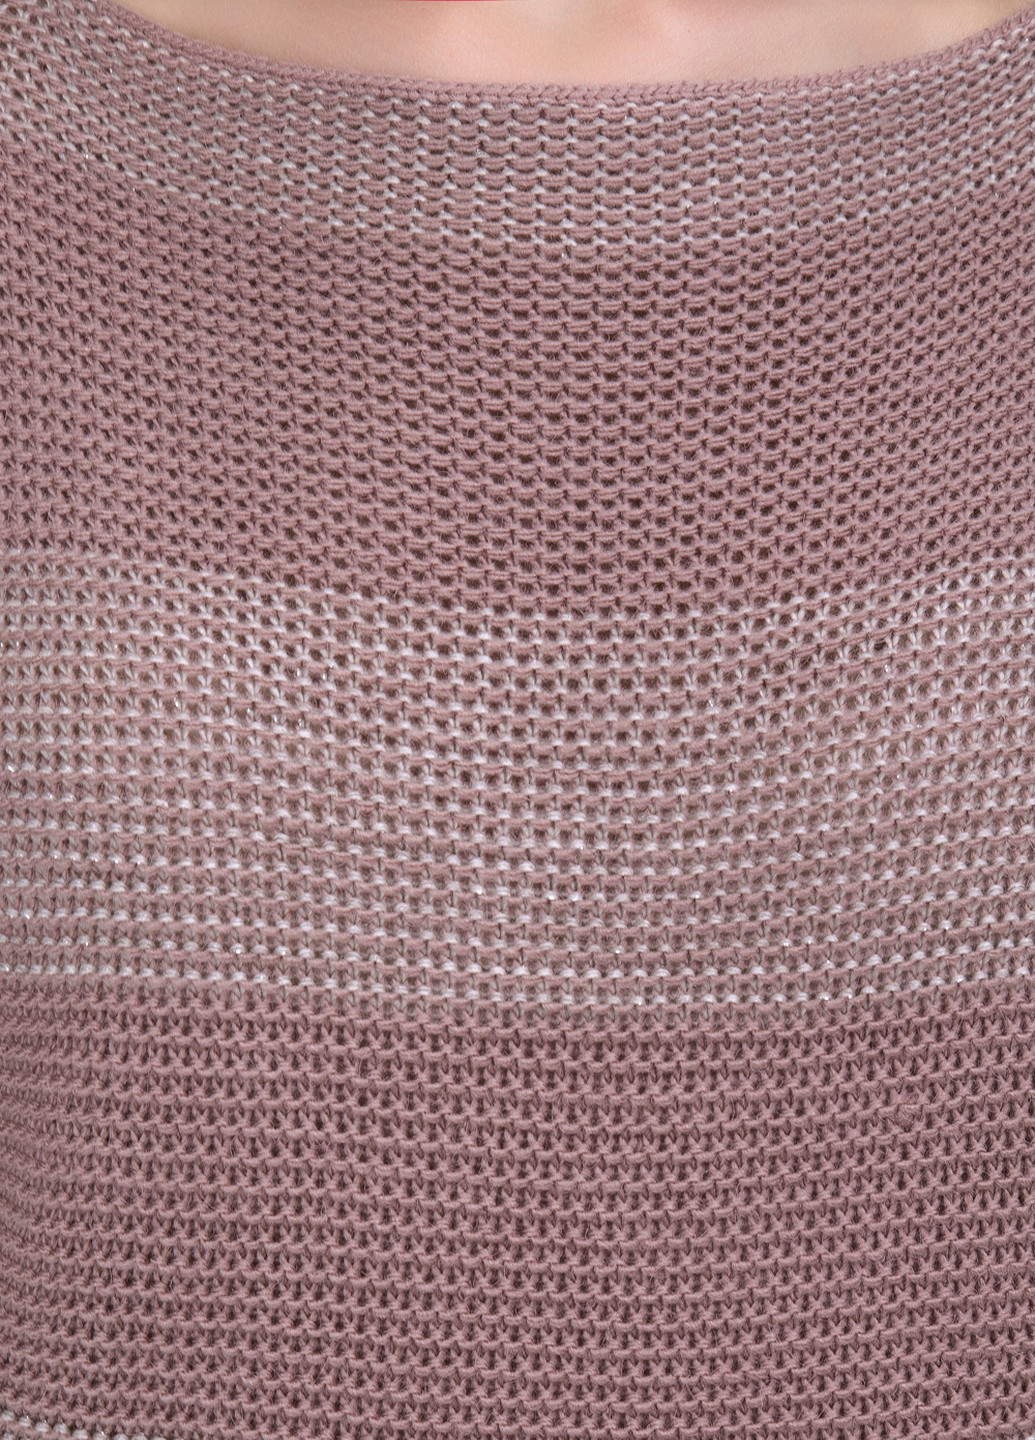 Розово-коричневый демисезонный джемпер джемпер Triko Bakh